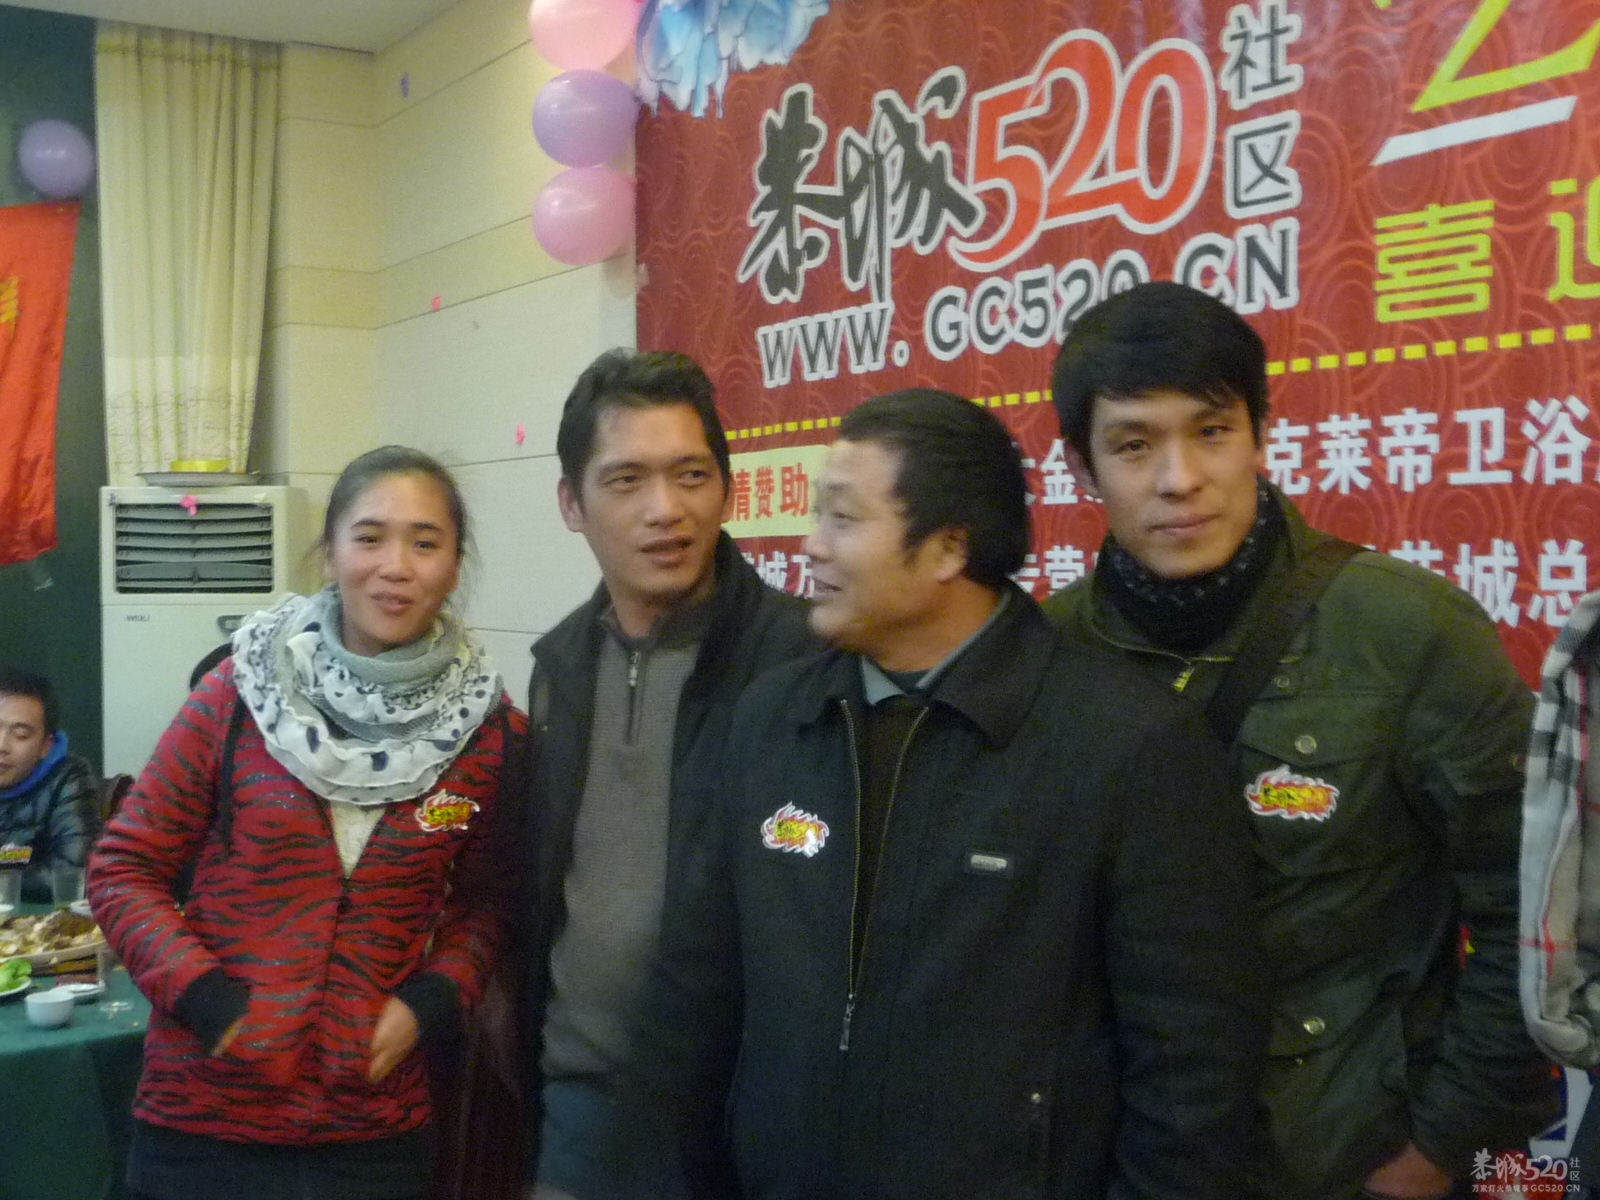 2012年1月20日恭城520社区论谈欢庆相聚160 / 作者:我不懂你 / 帖子ID:8582